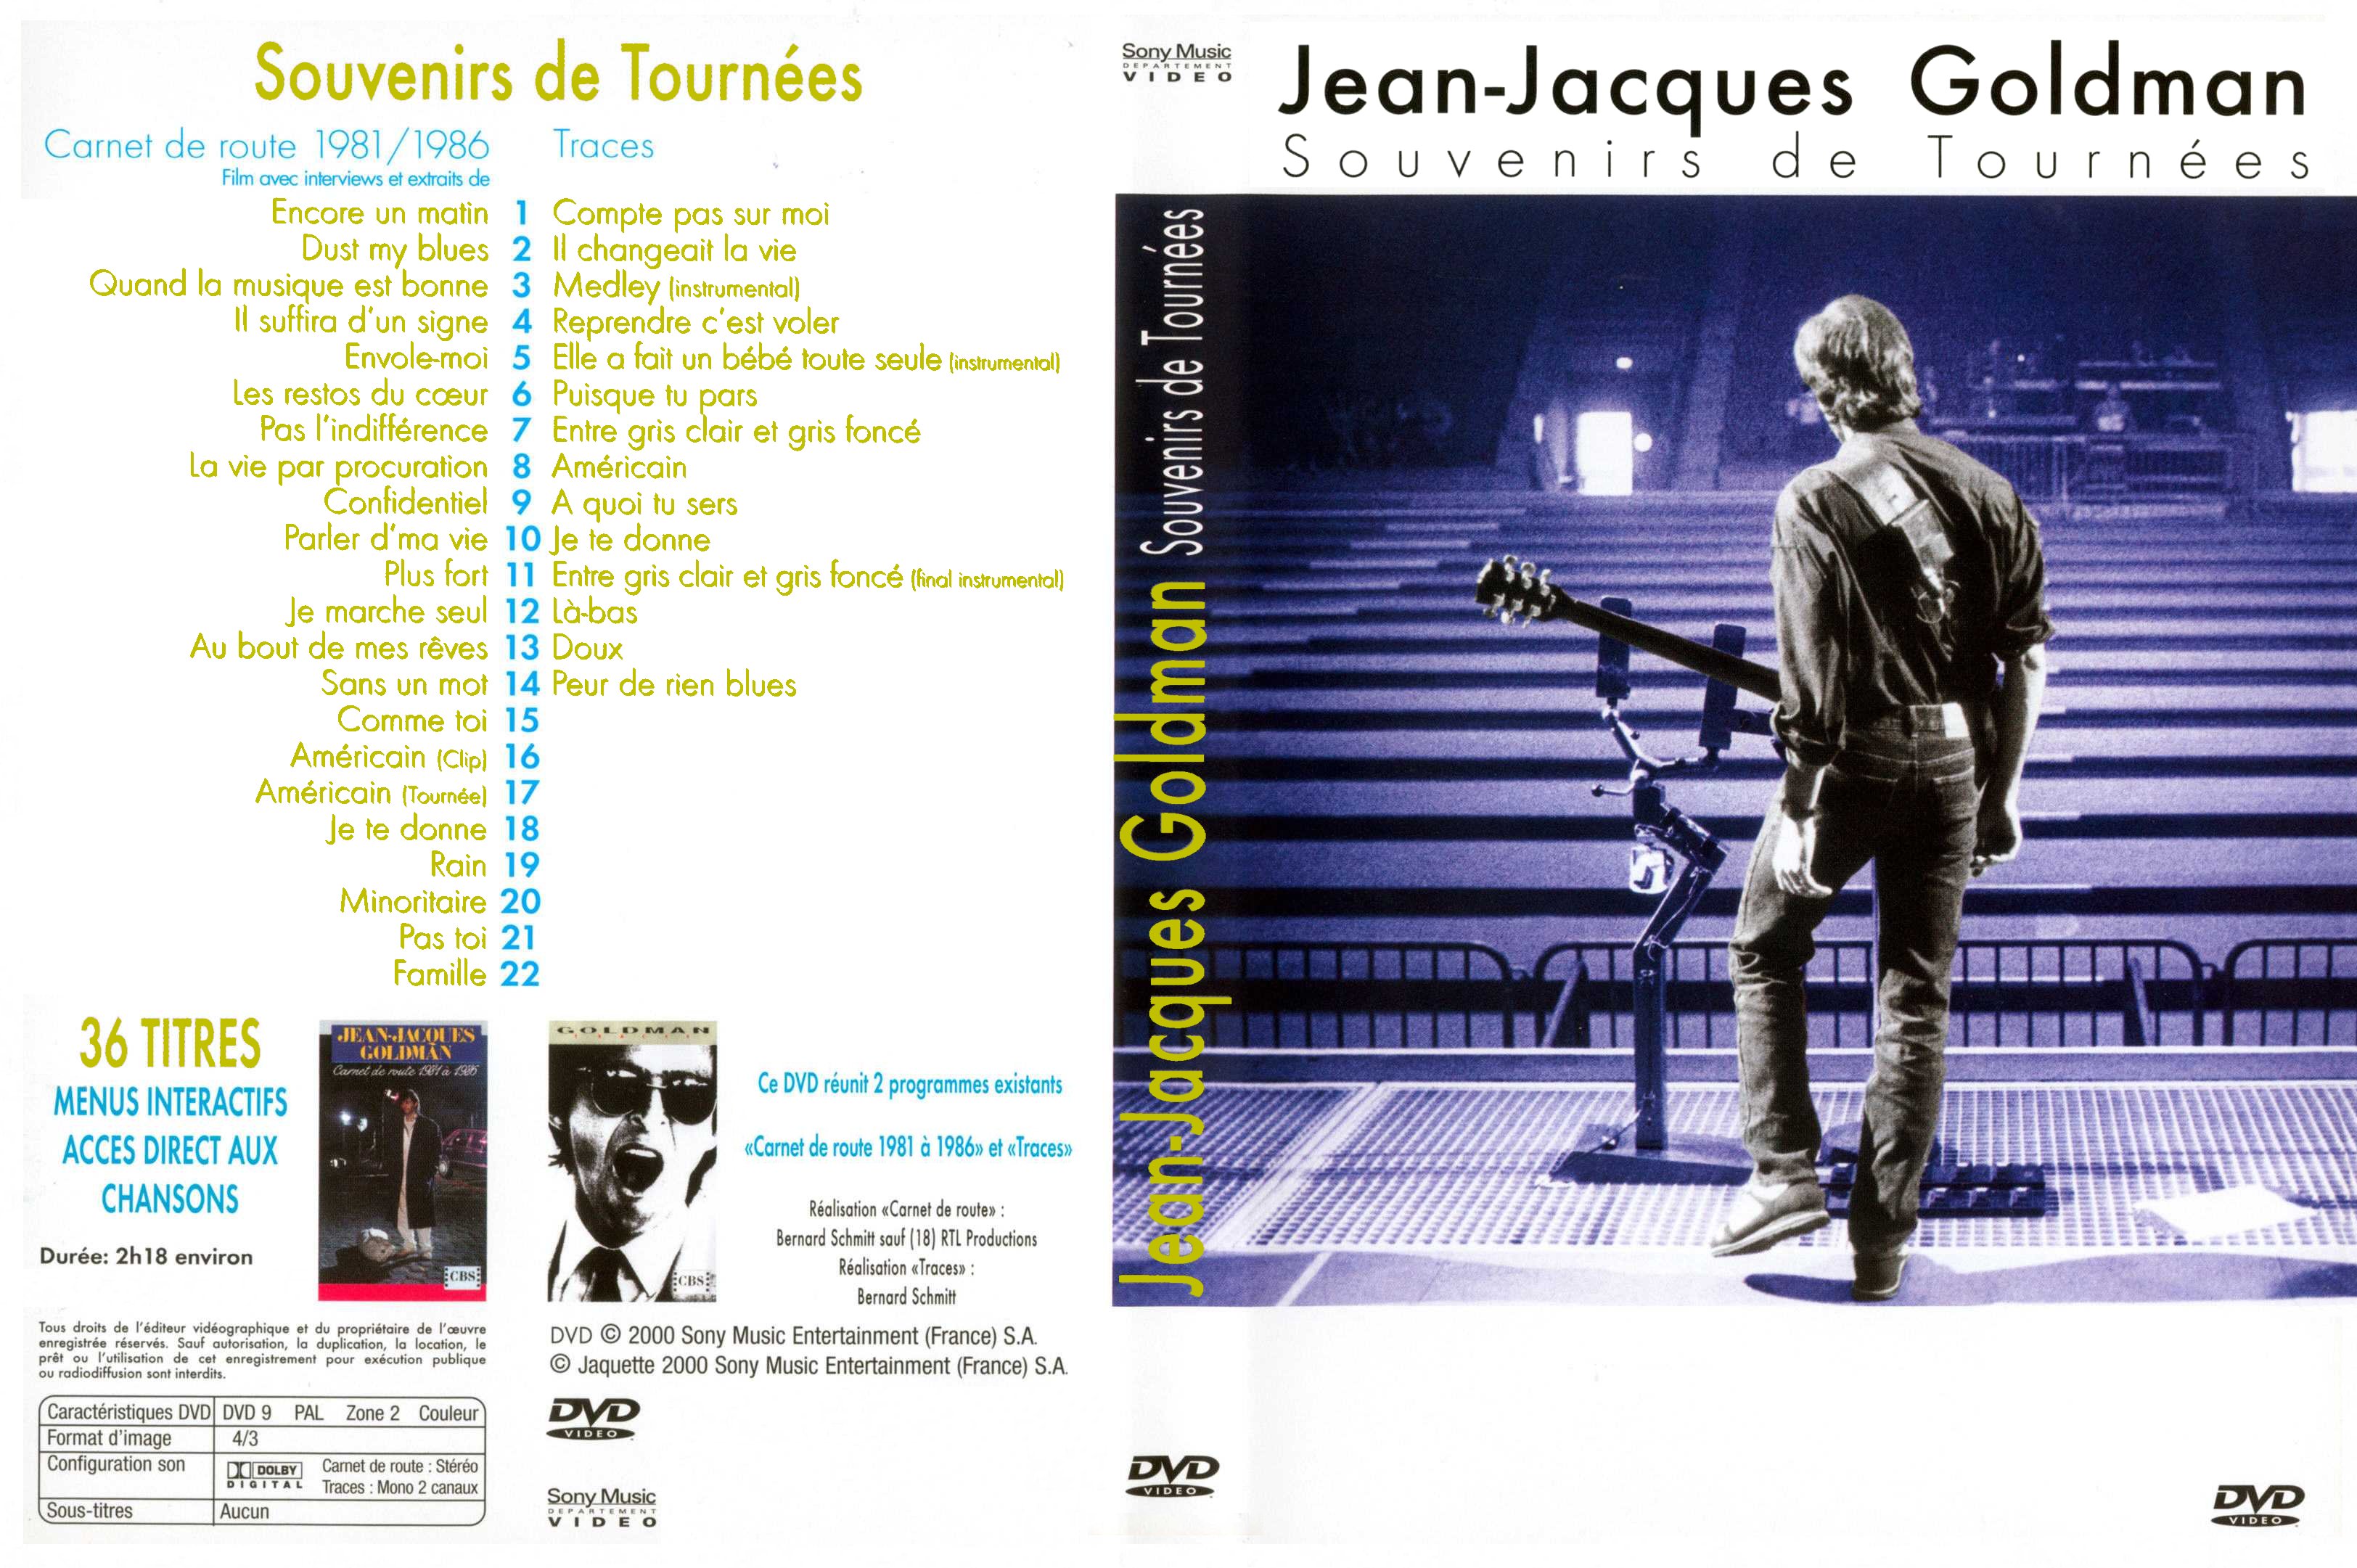 Jaquette DVD Jean-Jacques Goldman Souvenirs de tournees